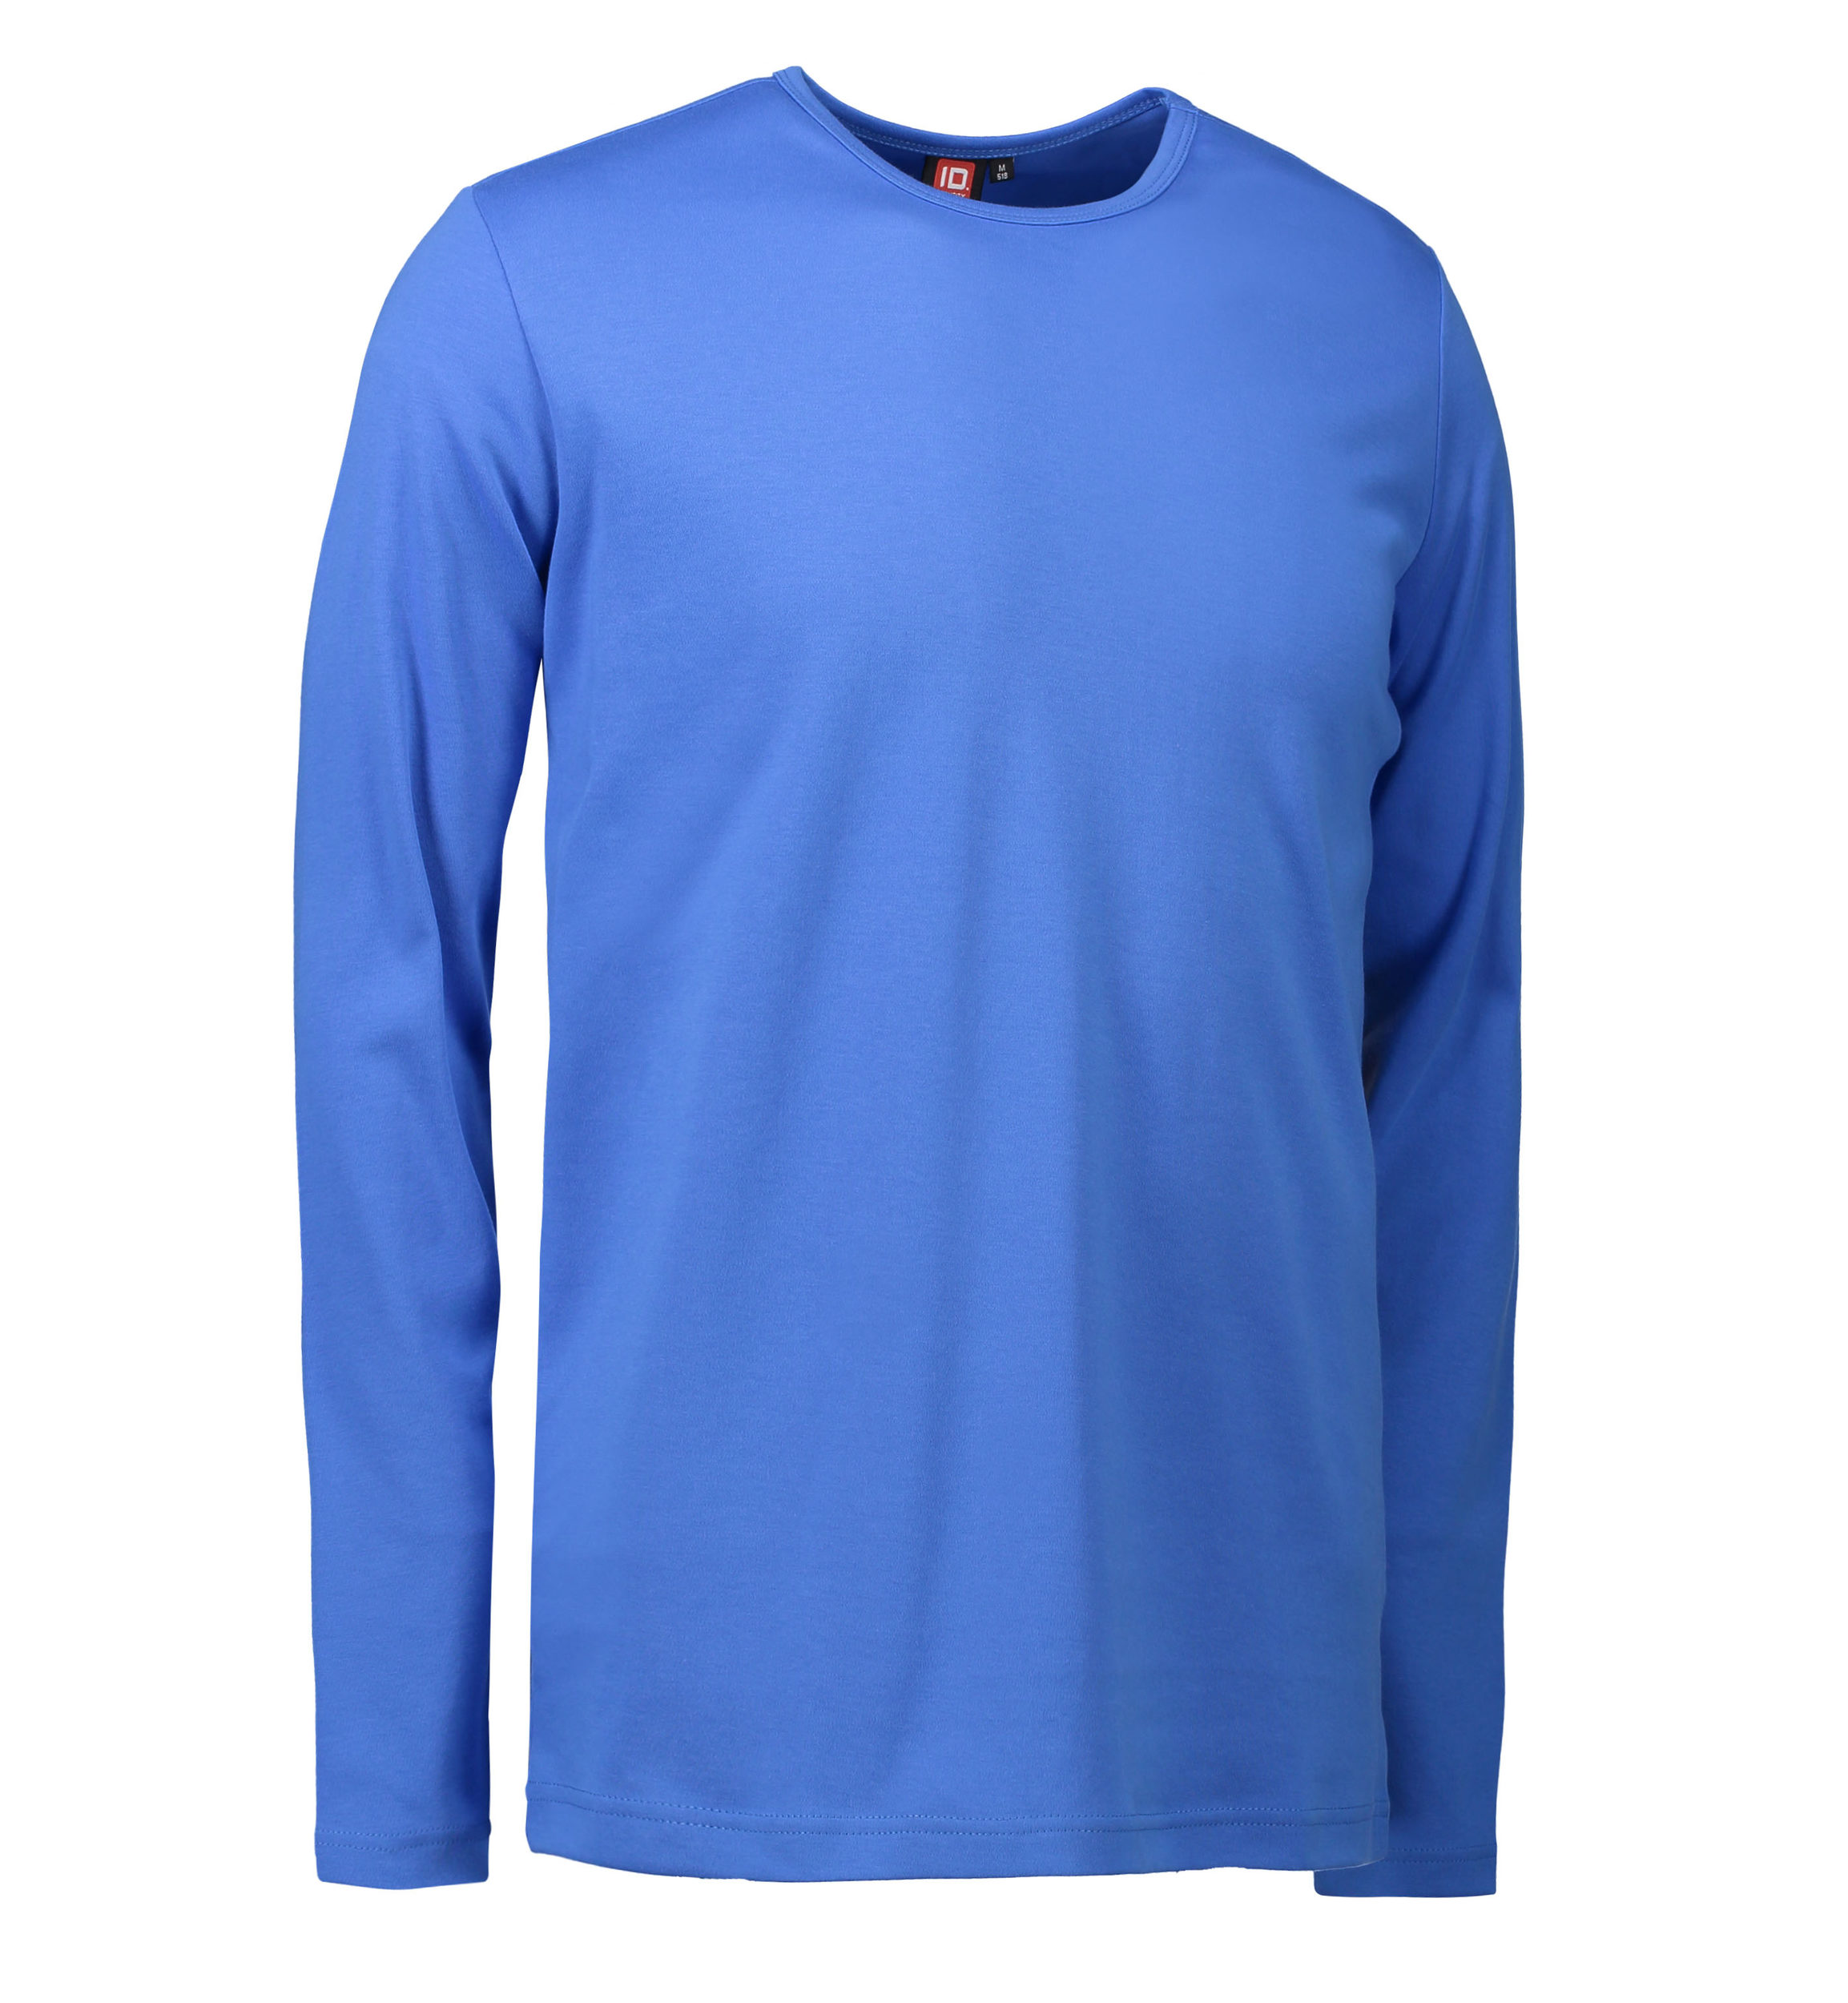 Billede af Blå langærmet t-shirt til mænd - XL hos Sygeplejebutikken.dk